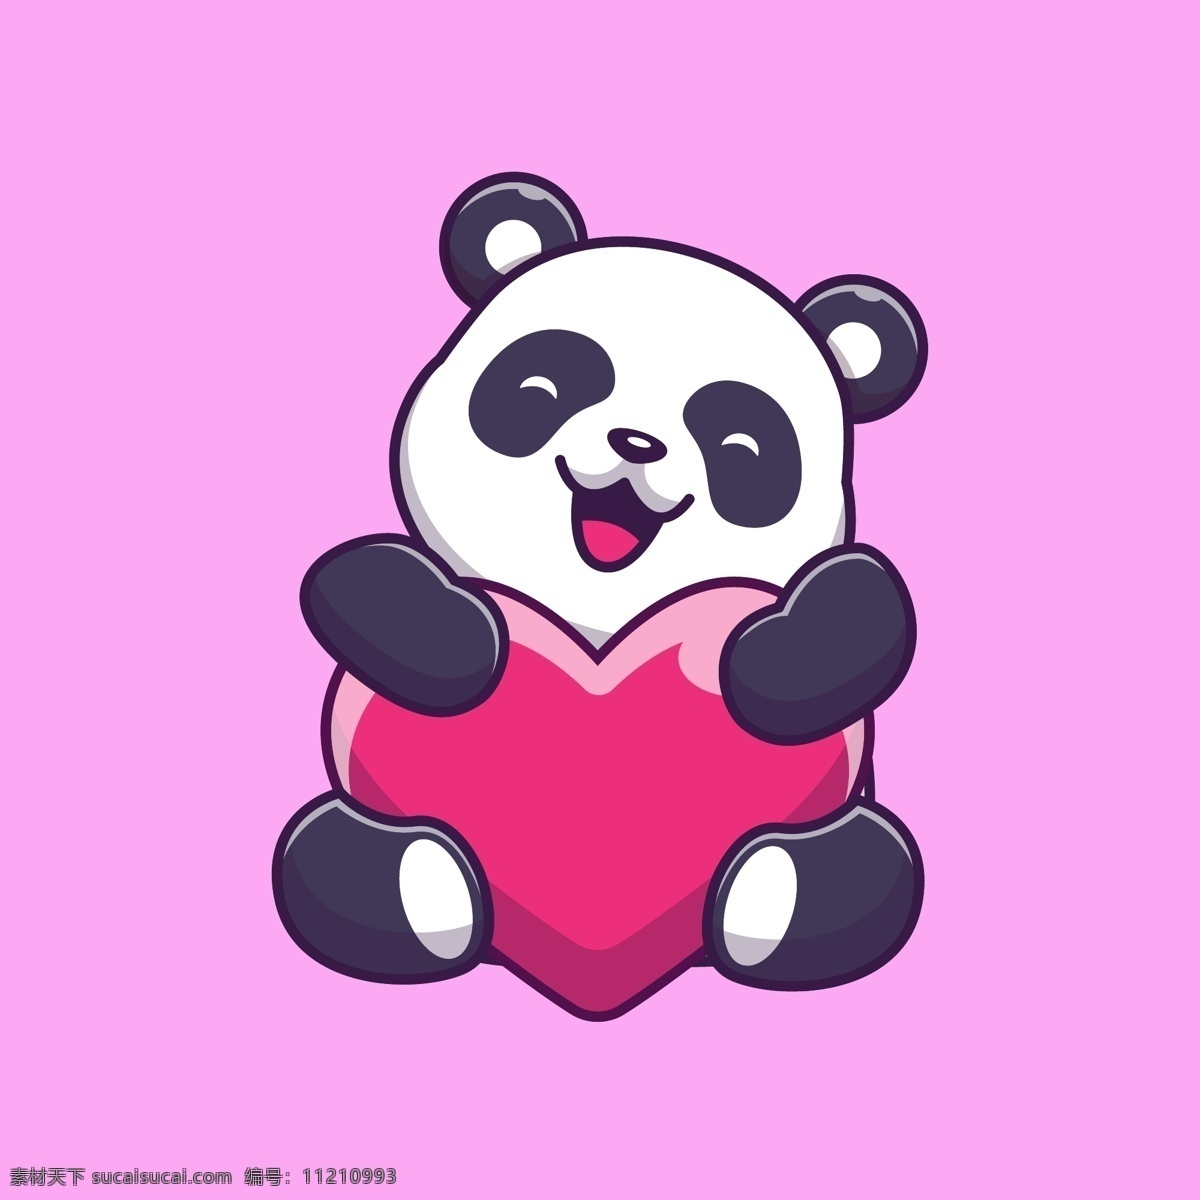 大熊猫 表情包 黑白色 开心 微笑 难过 可爱 卡通动物 国宝 野生动物 漫画 插画 爱心 卡通熊猫 卡通设计